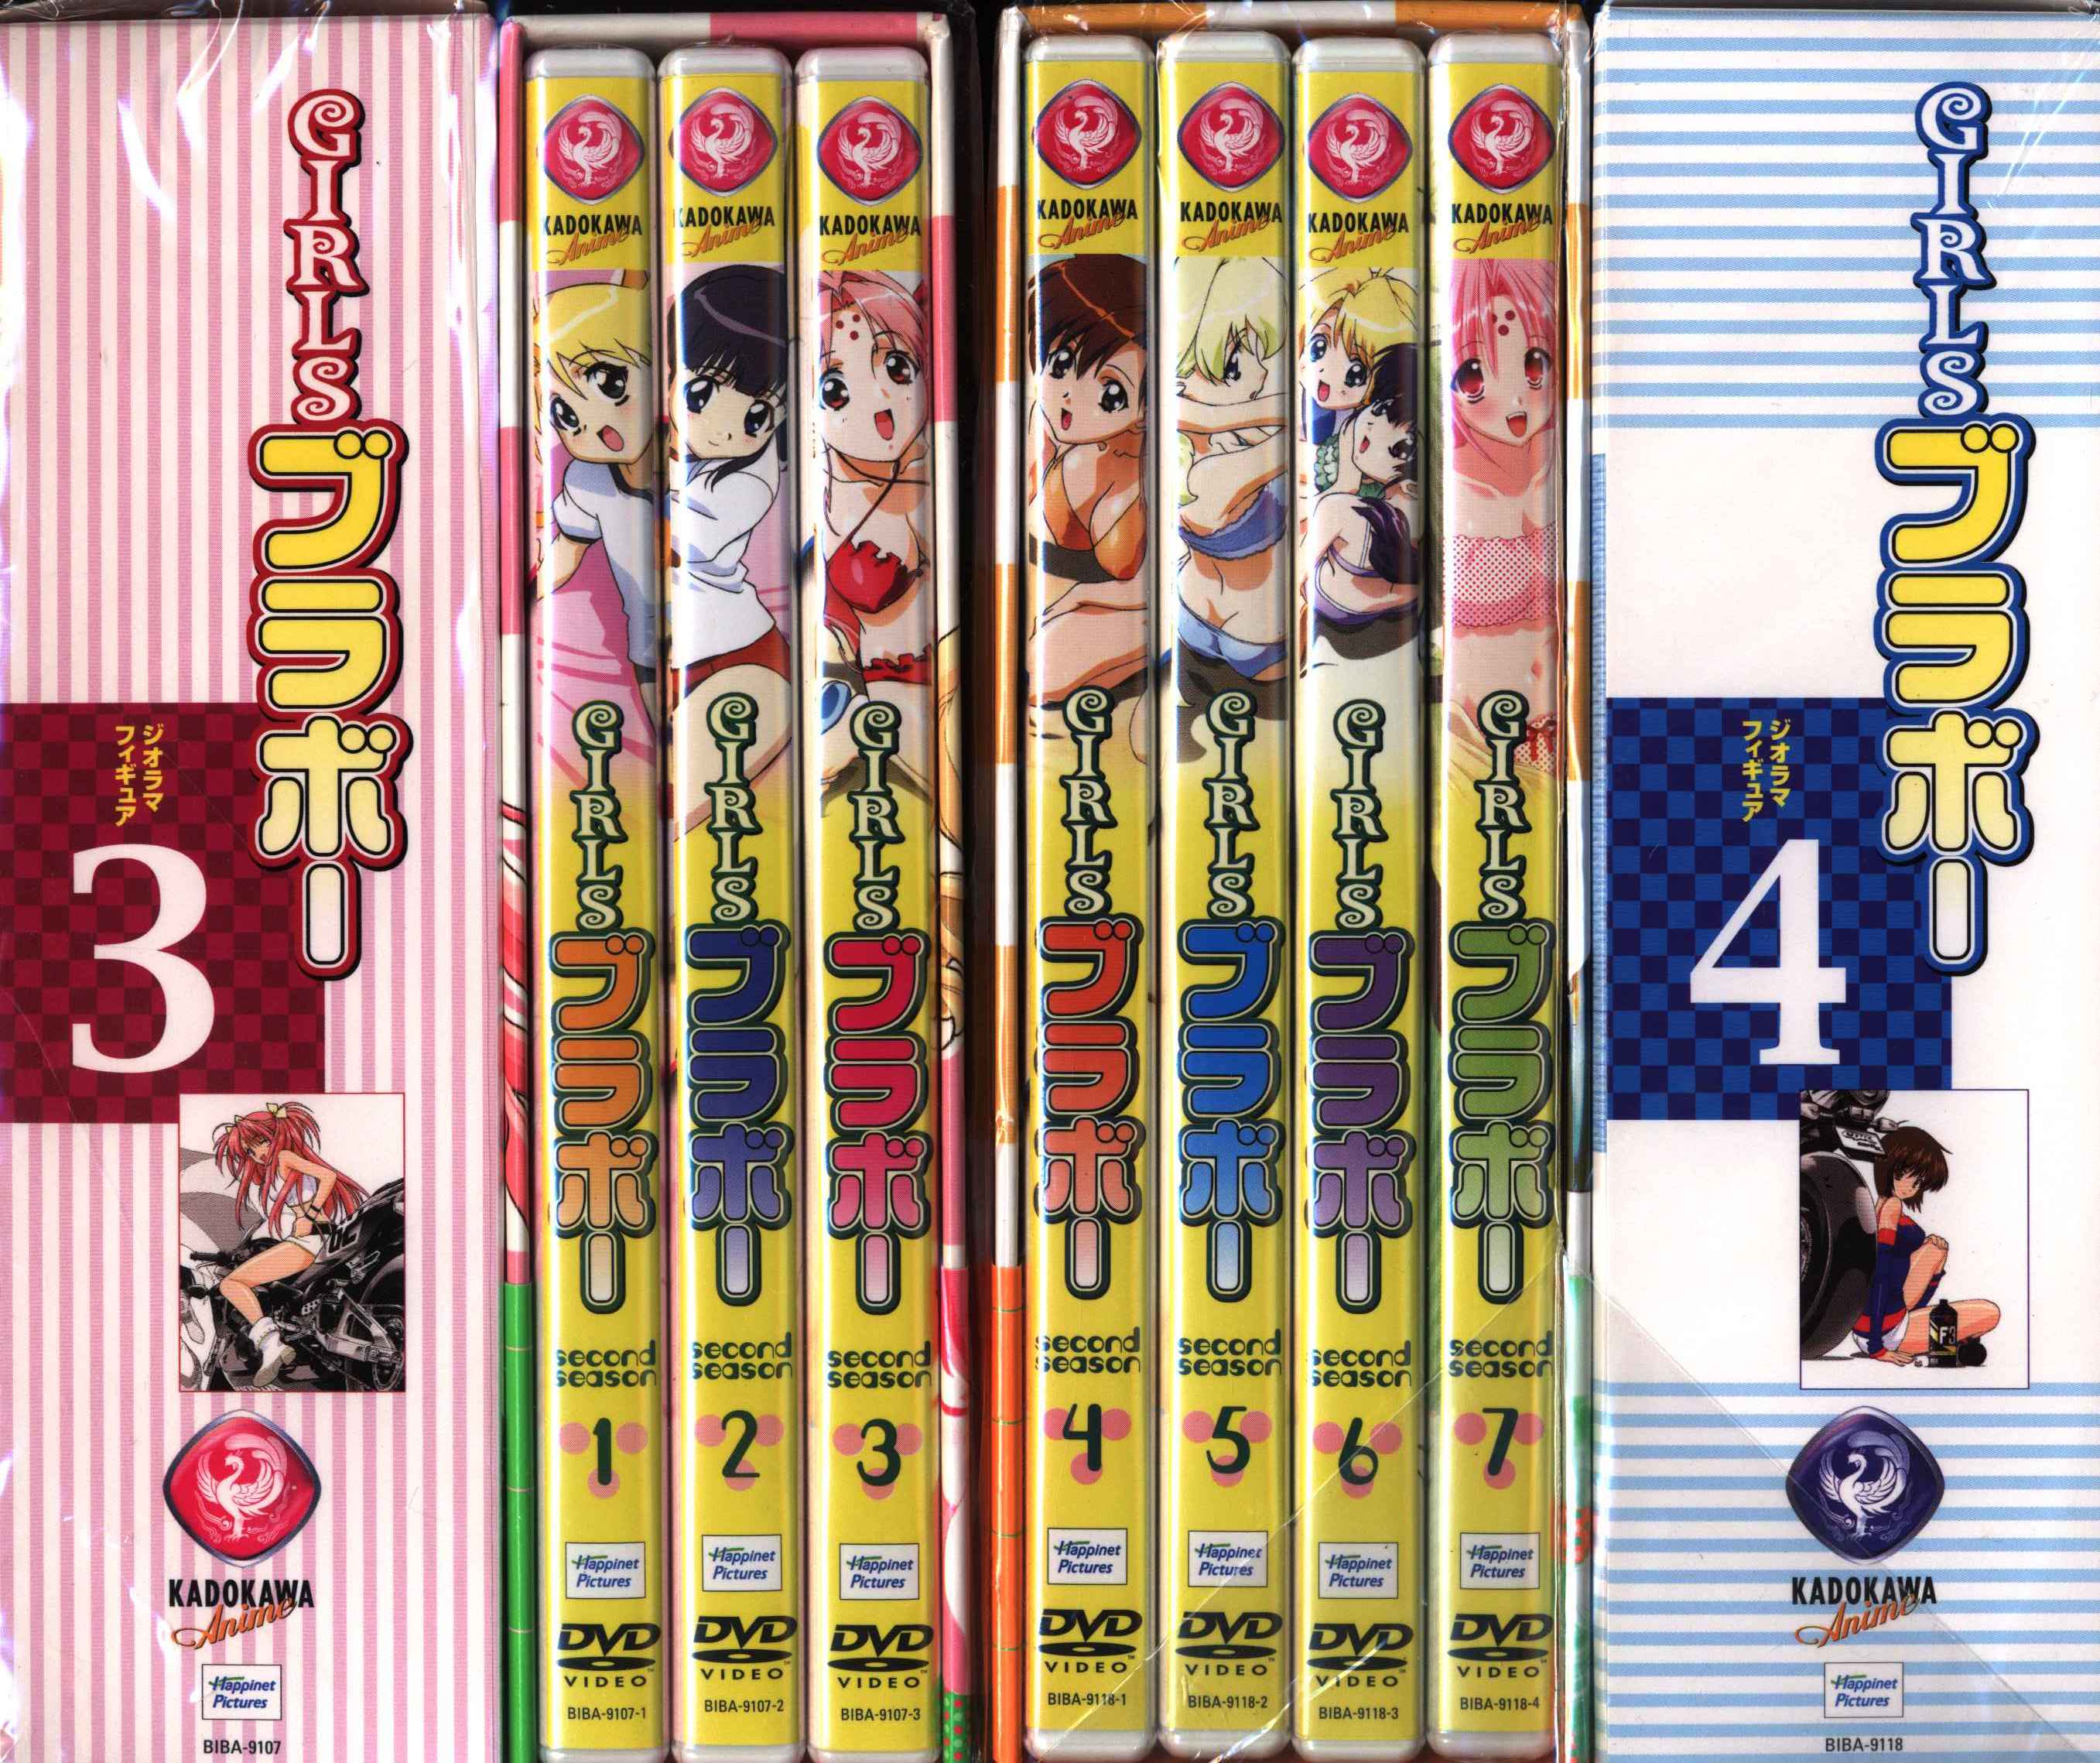 GIRLSブラボー DVD-BOX 全4巻